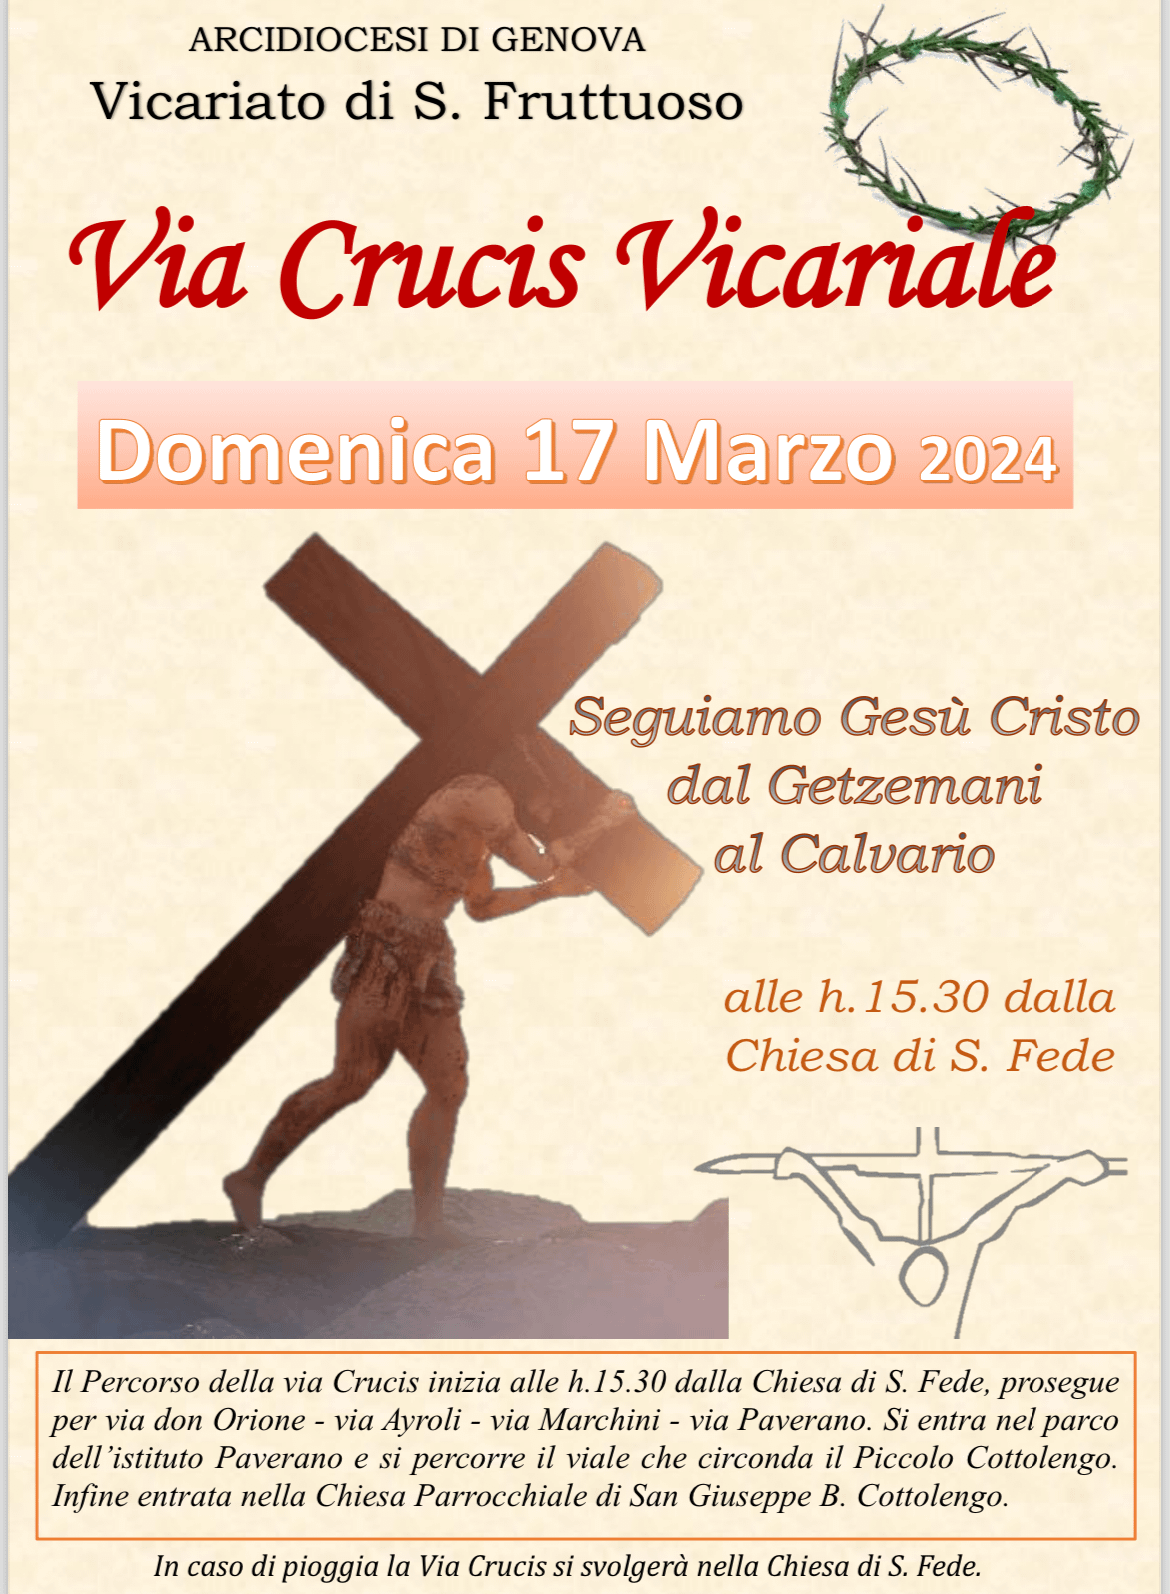 Via crucis vicariale - Domenica 17 Marzo 2024